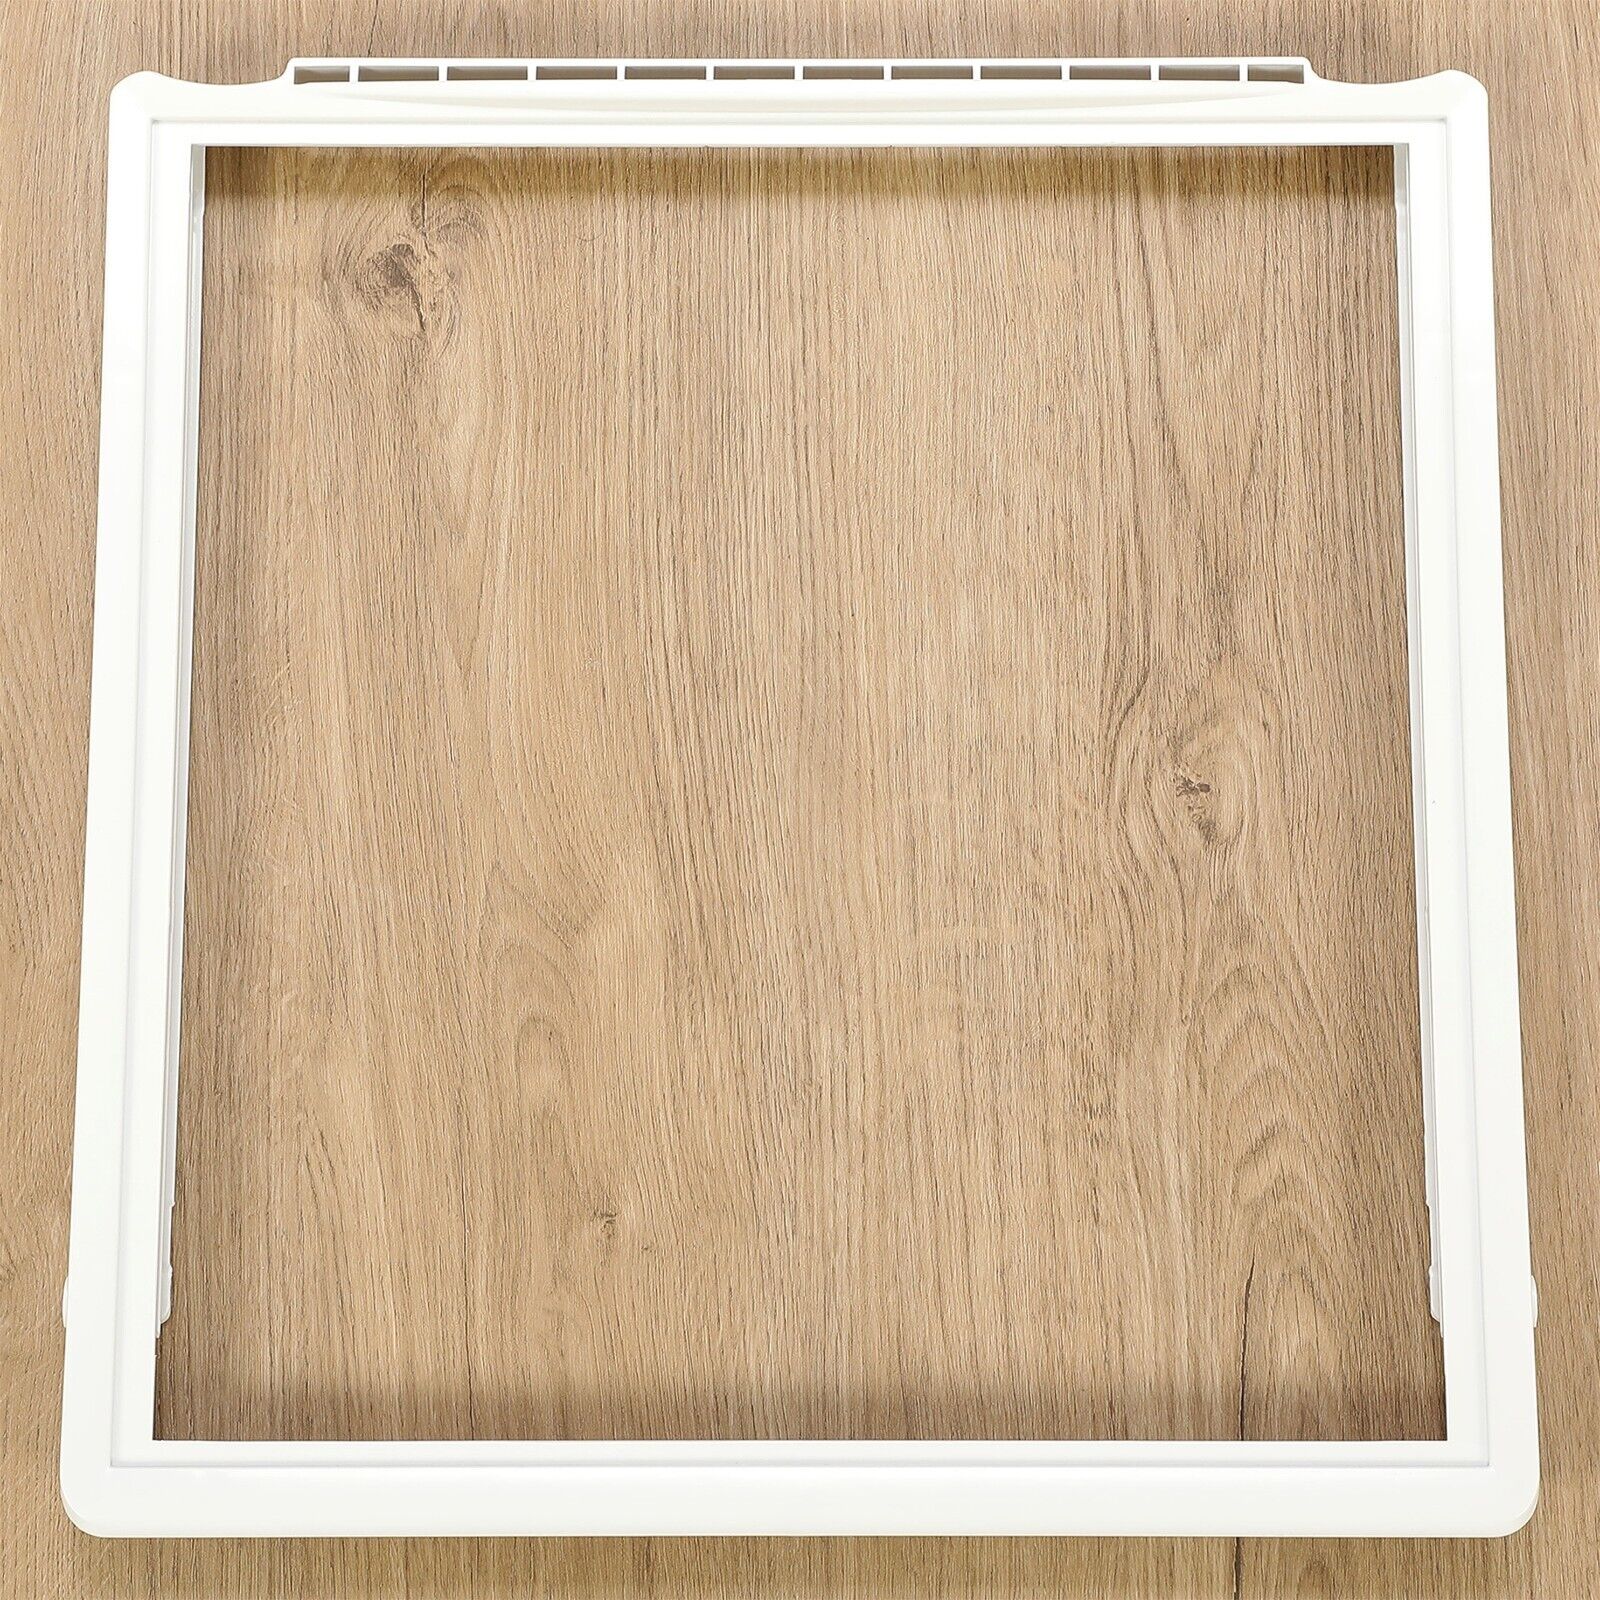 Crisper Meat Pan Cover Shelf Frame For Electrolux Fridge #241969501